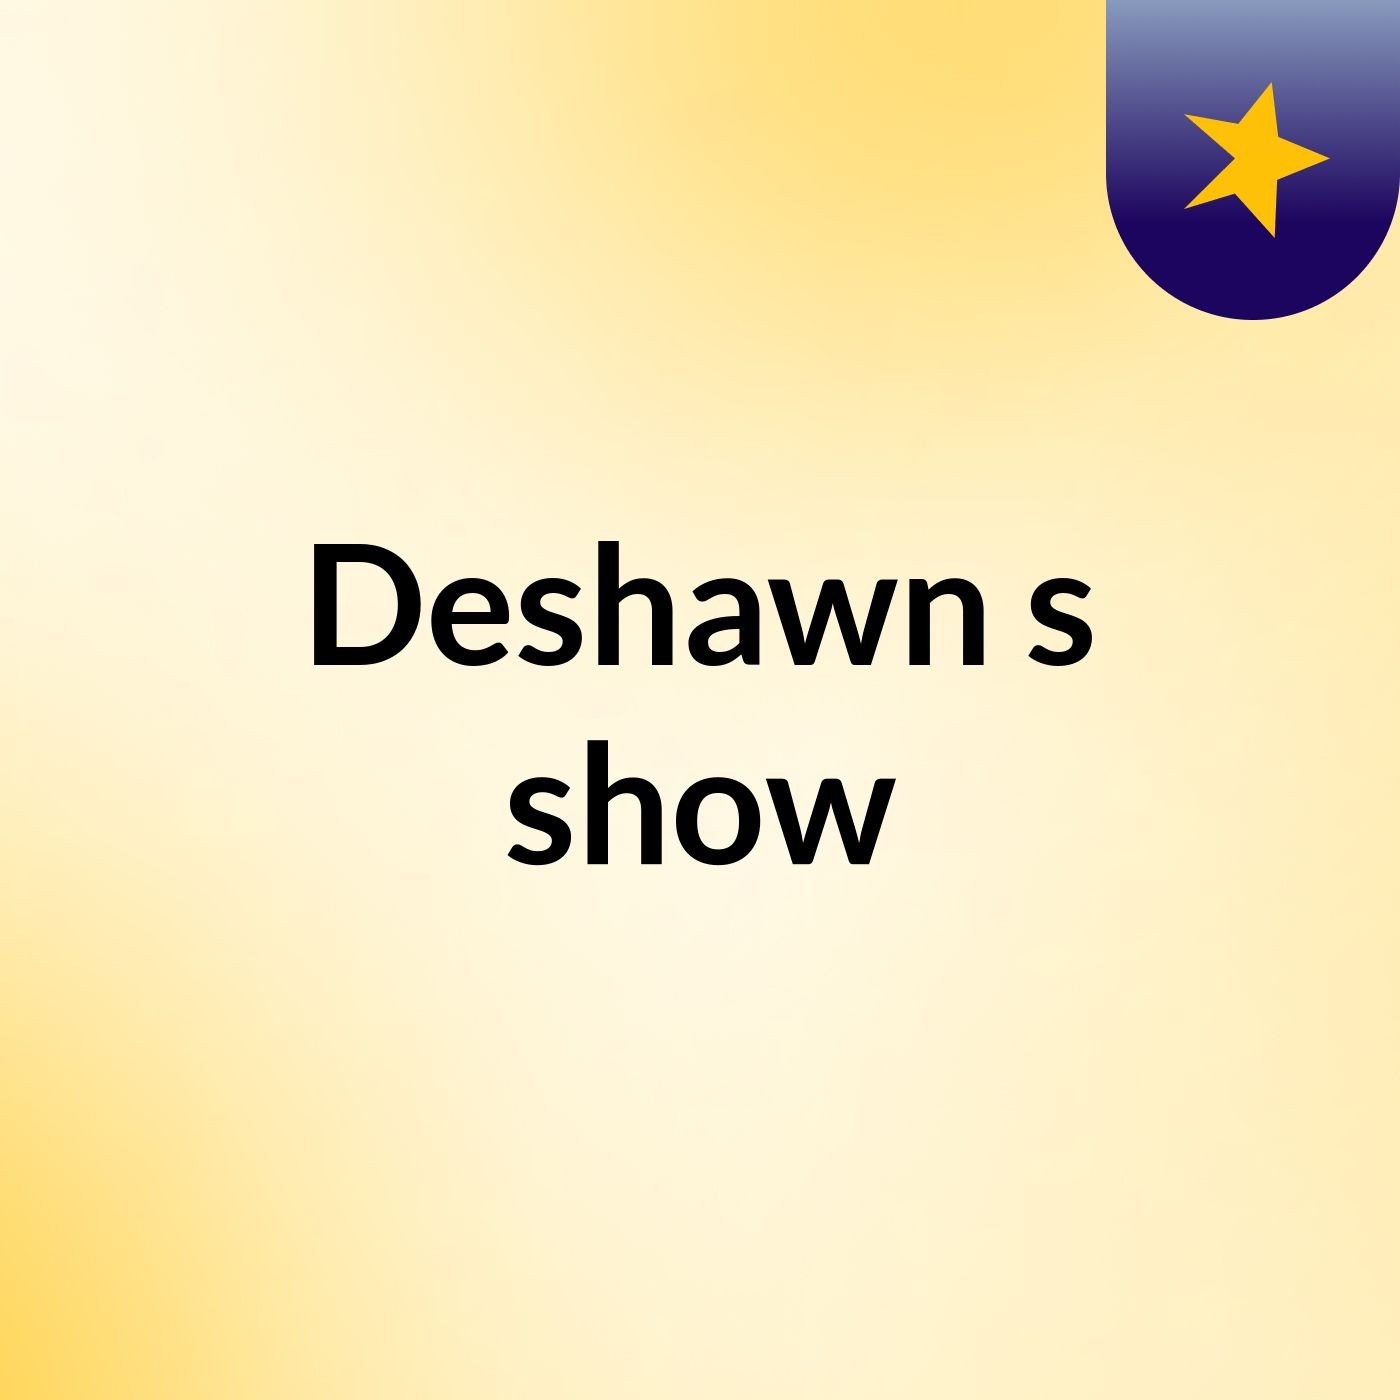 Deshawn's show